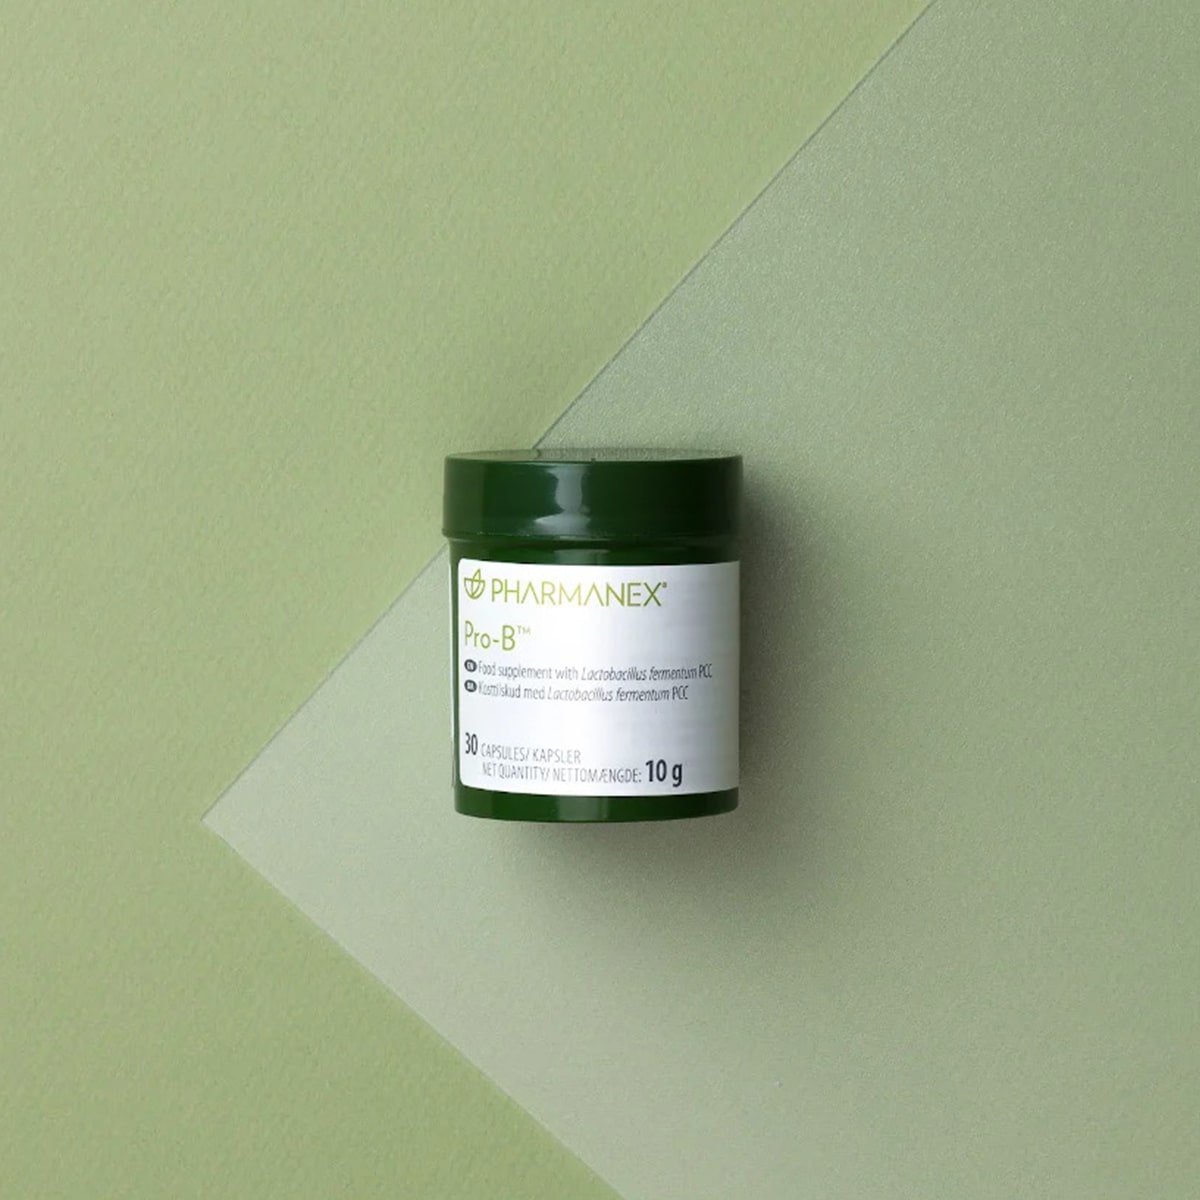 NuSkin Pharmanex Pro-B Kapseldose (enthält 30 Kapseln, Nettogewicht: 10 g) liegt geschlossen auf mintgrüner glatter Oberfläche.